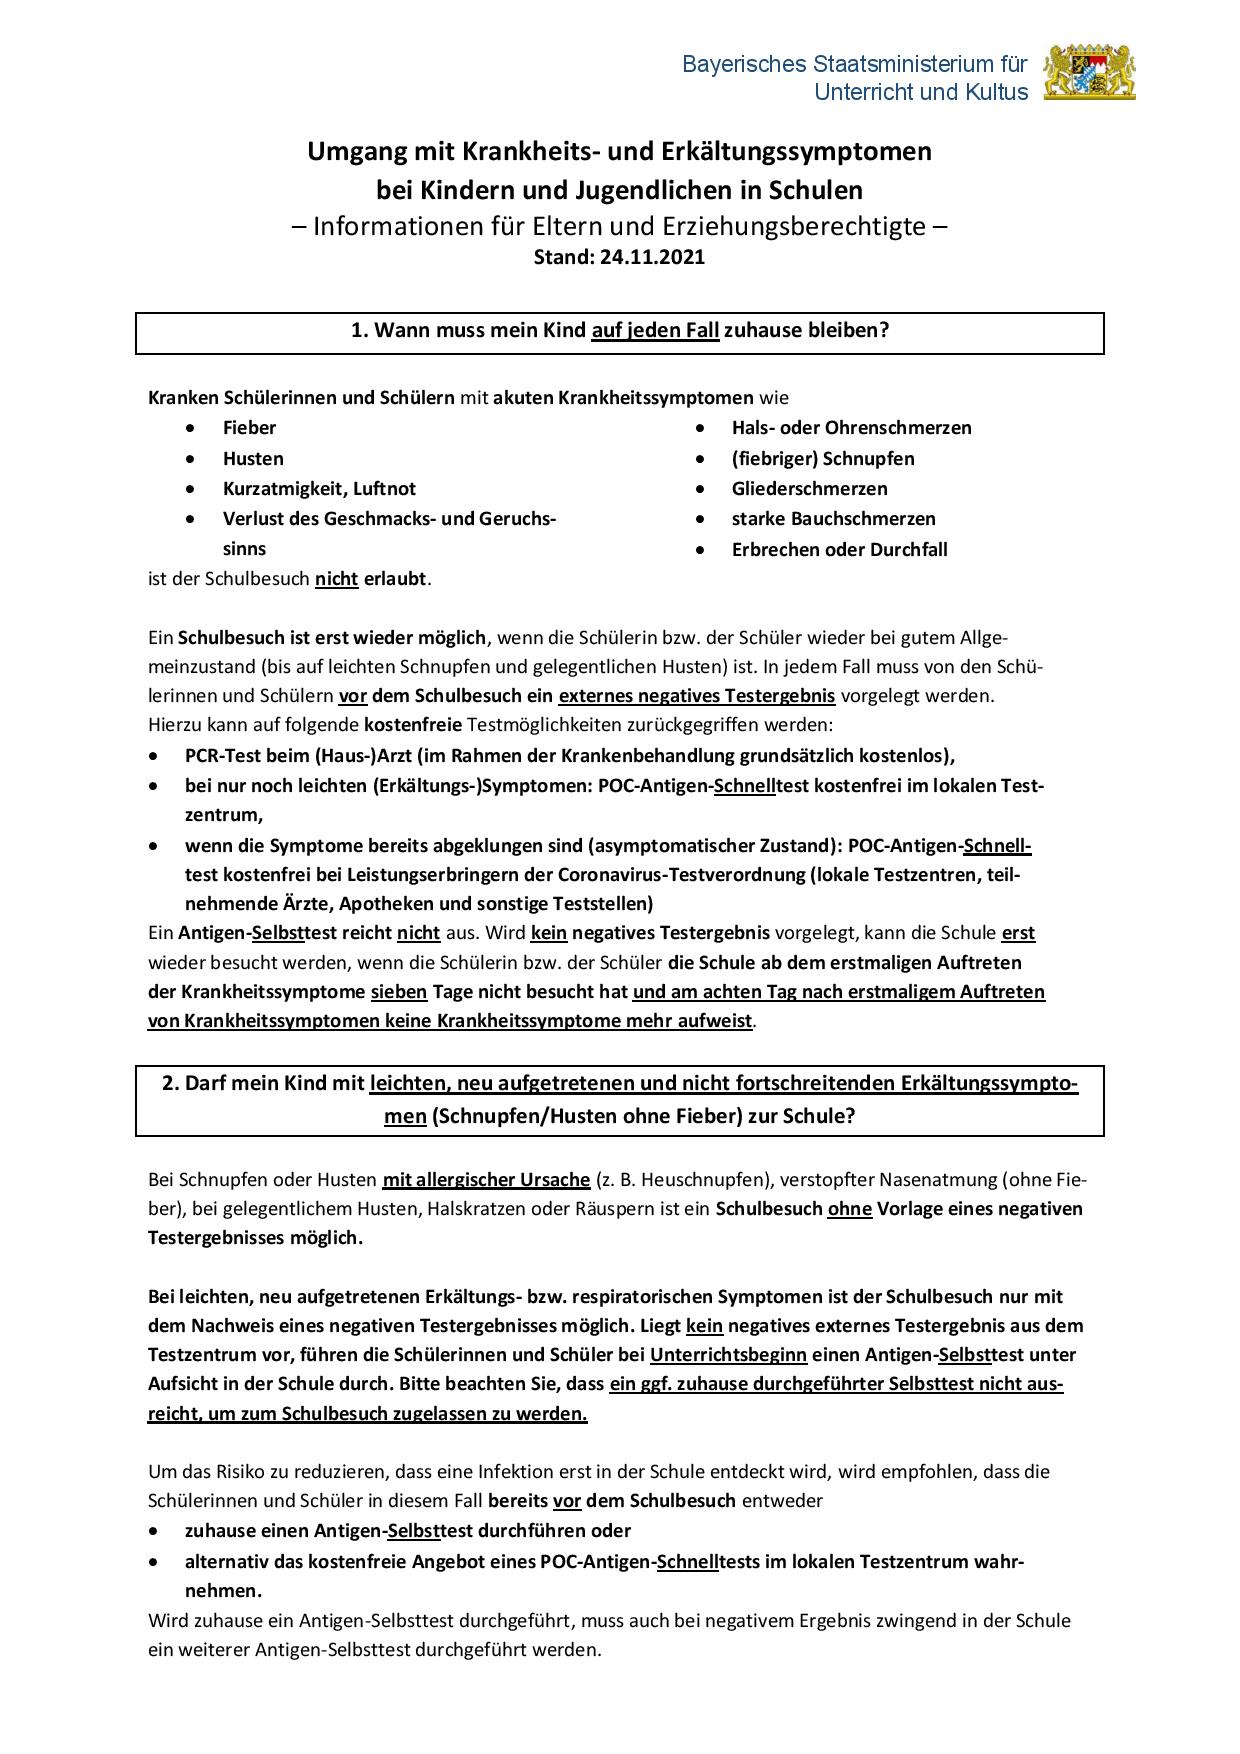 25112021 4 Aktualisiertes Merkblatt fuer Erziehungsberechtigte Erkaeltungssymptome page 001